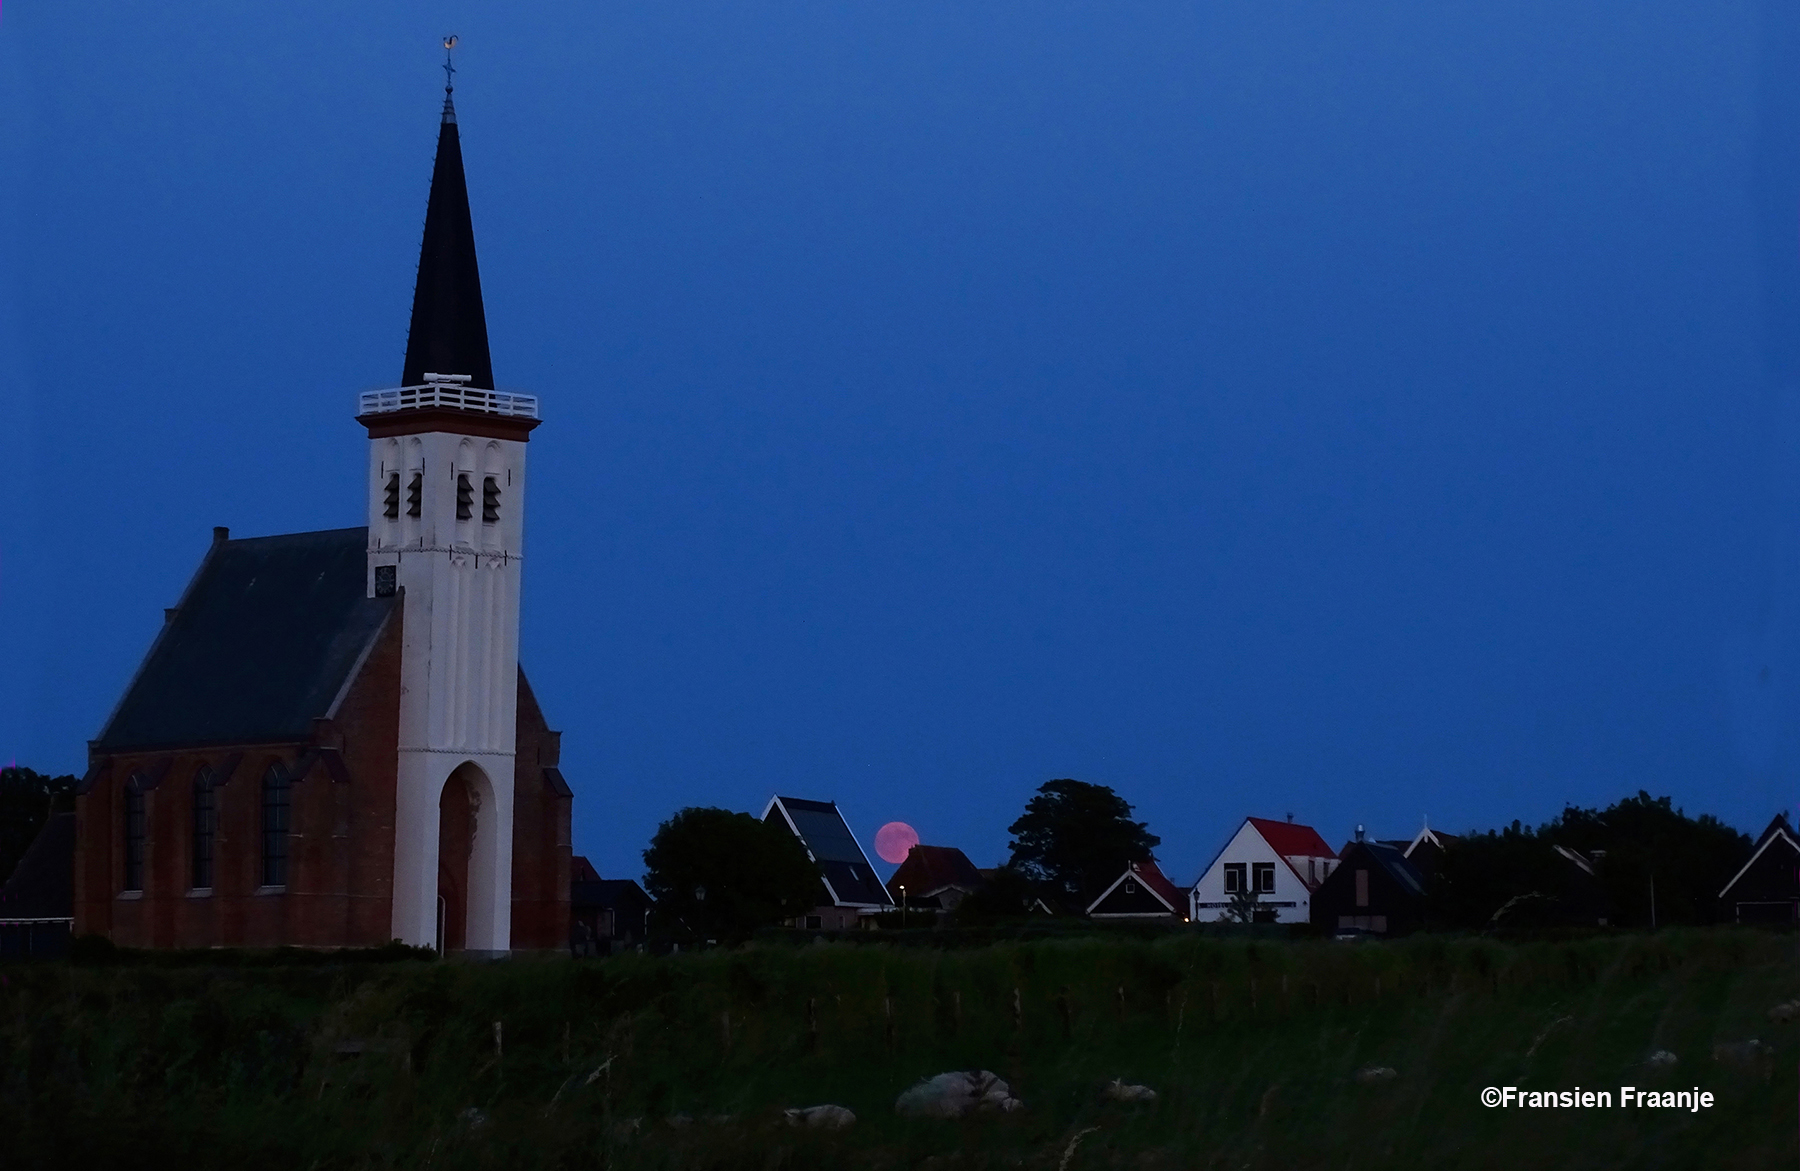 Als wij later terugrijden, zien we tussen de huizen naast het kerkje van Den Hoorn de opkomende maan verschijnen. Onder in beeld zijn nog vaaf de schapen te herkennen in de weide bij het kerkje. - Foto: ©Fransien Fraanje